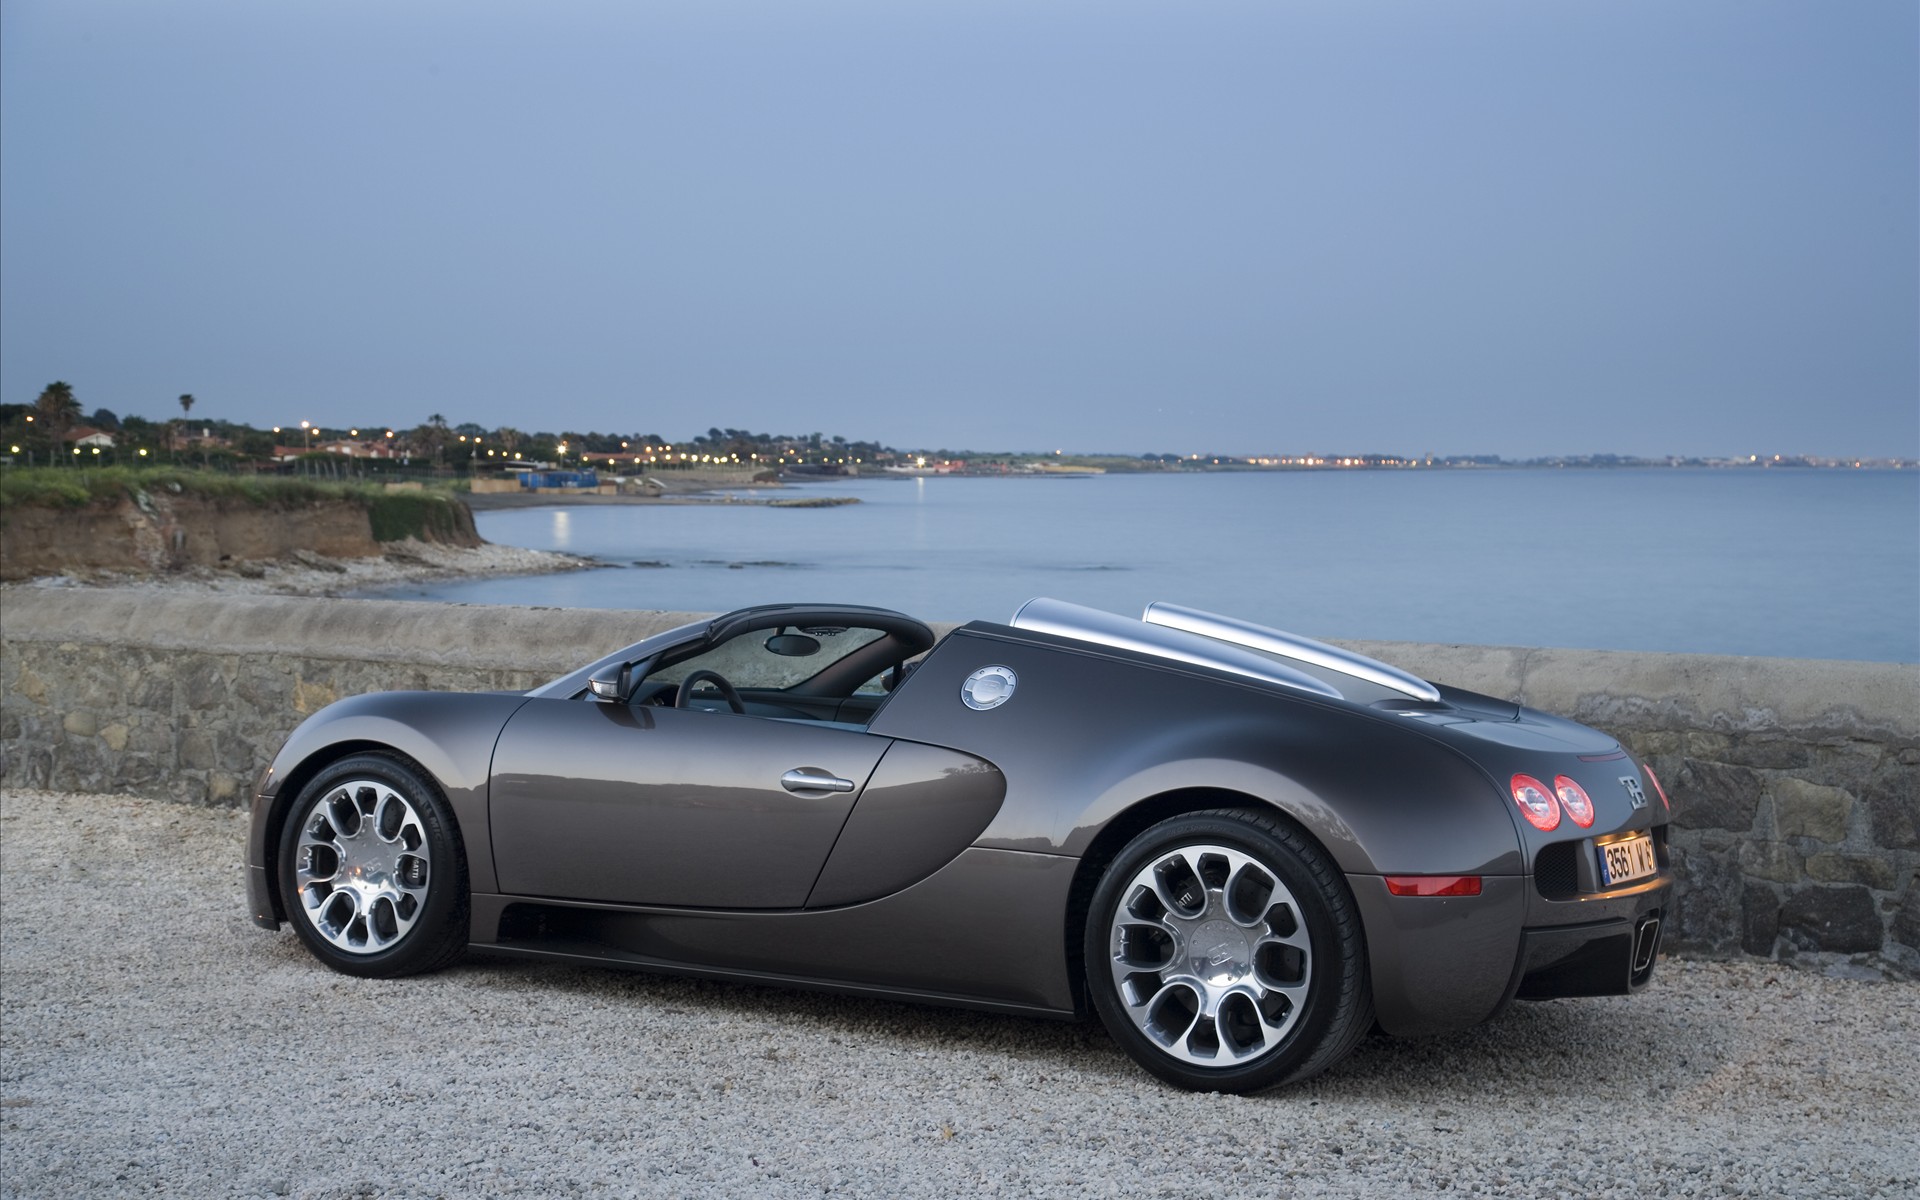 Bugatti Veyron HD Wallpaper | Background Image | 1920x1200 | ID:365994